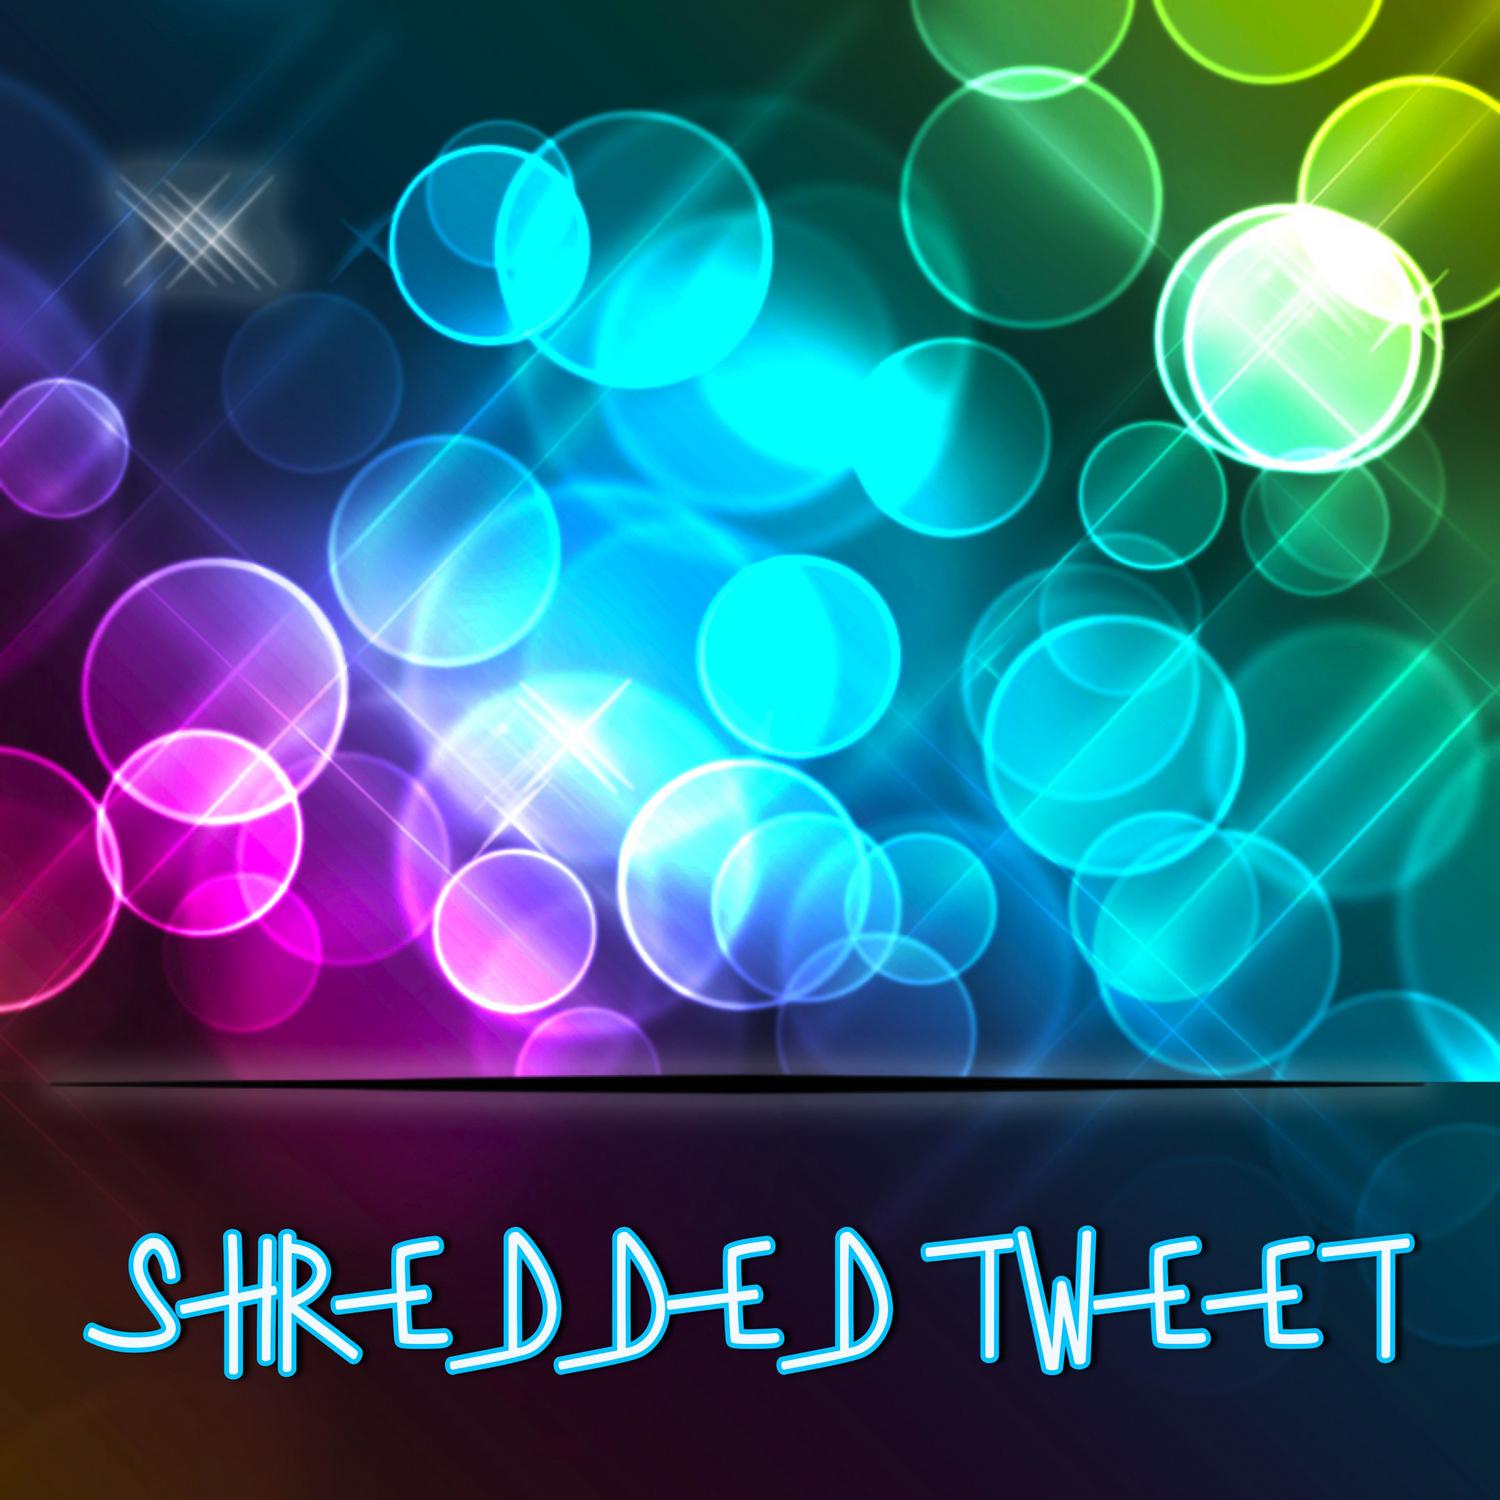 Shredded Tweet